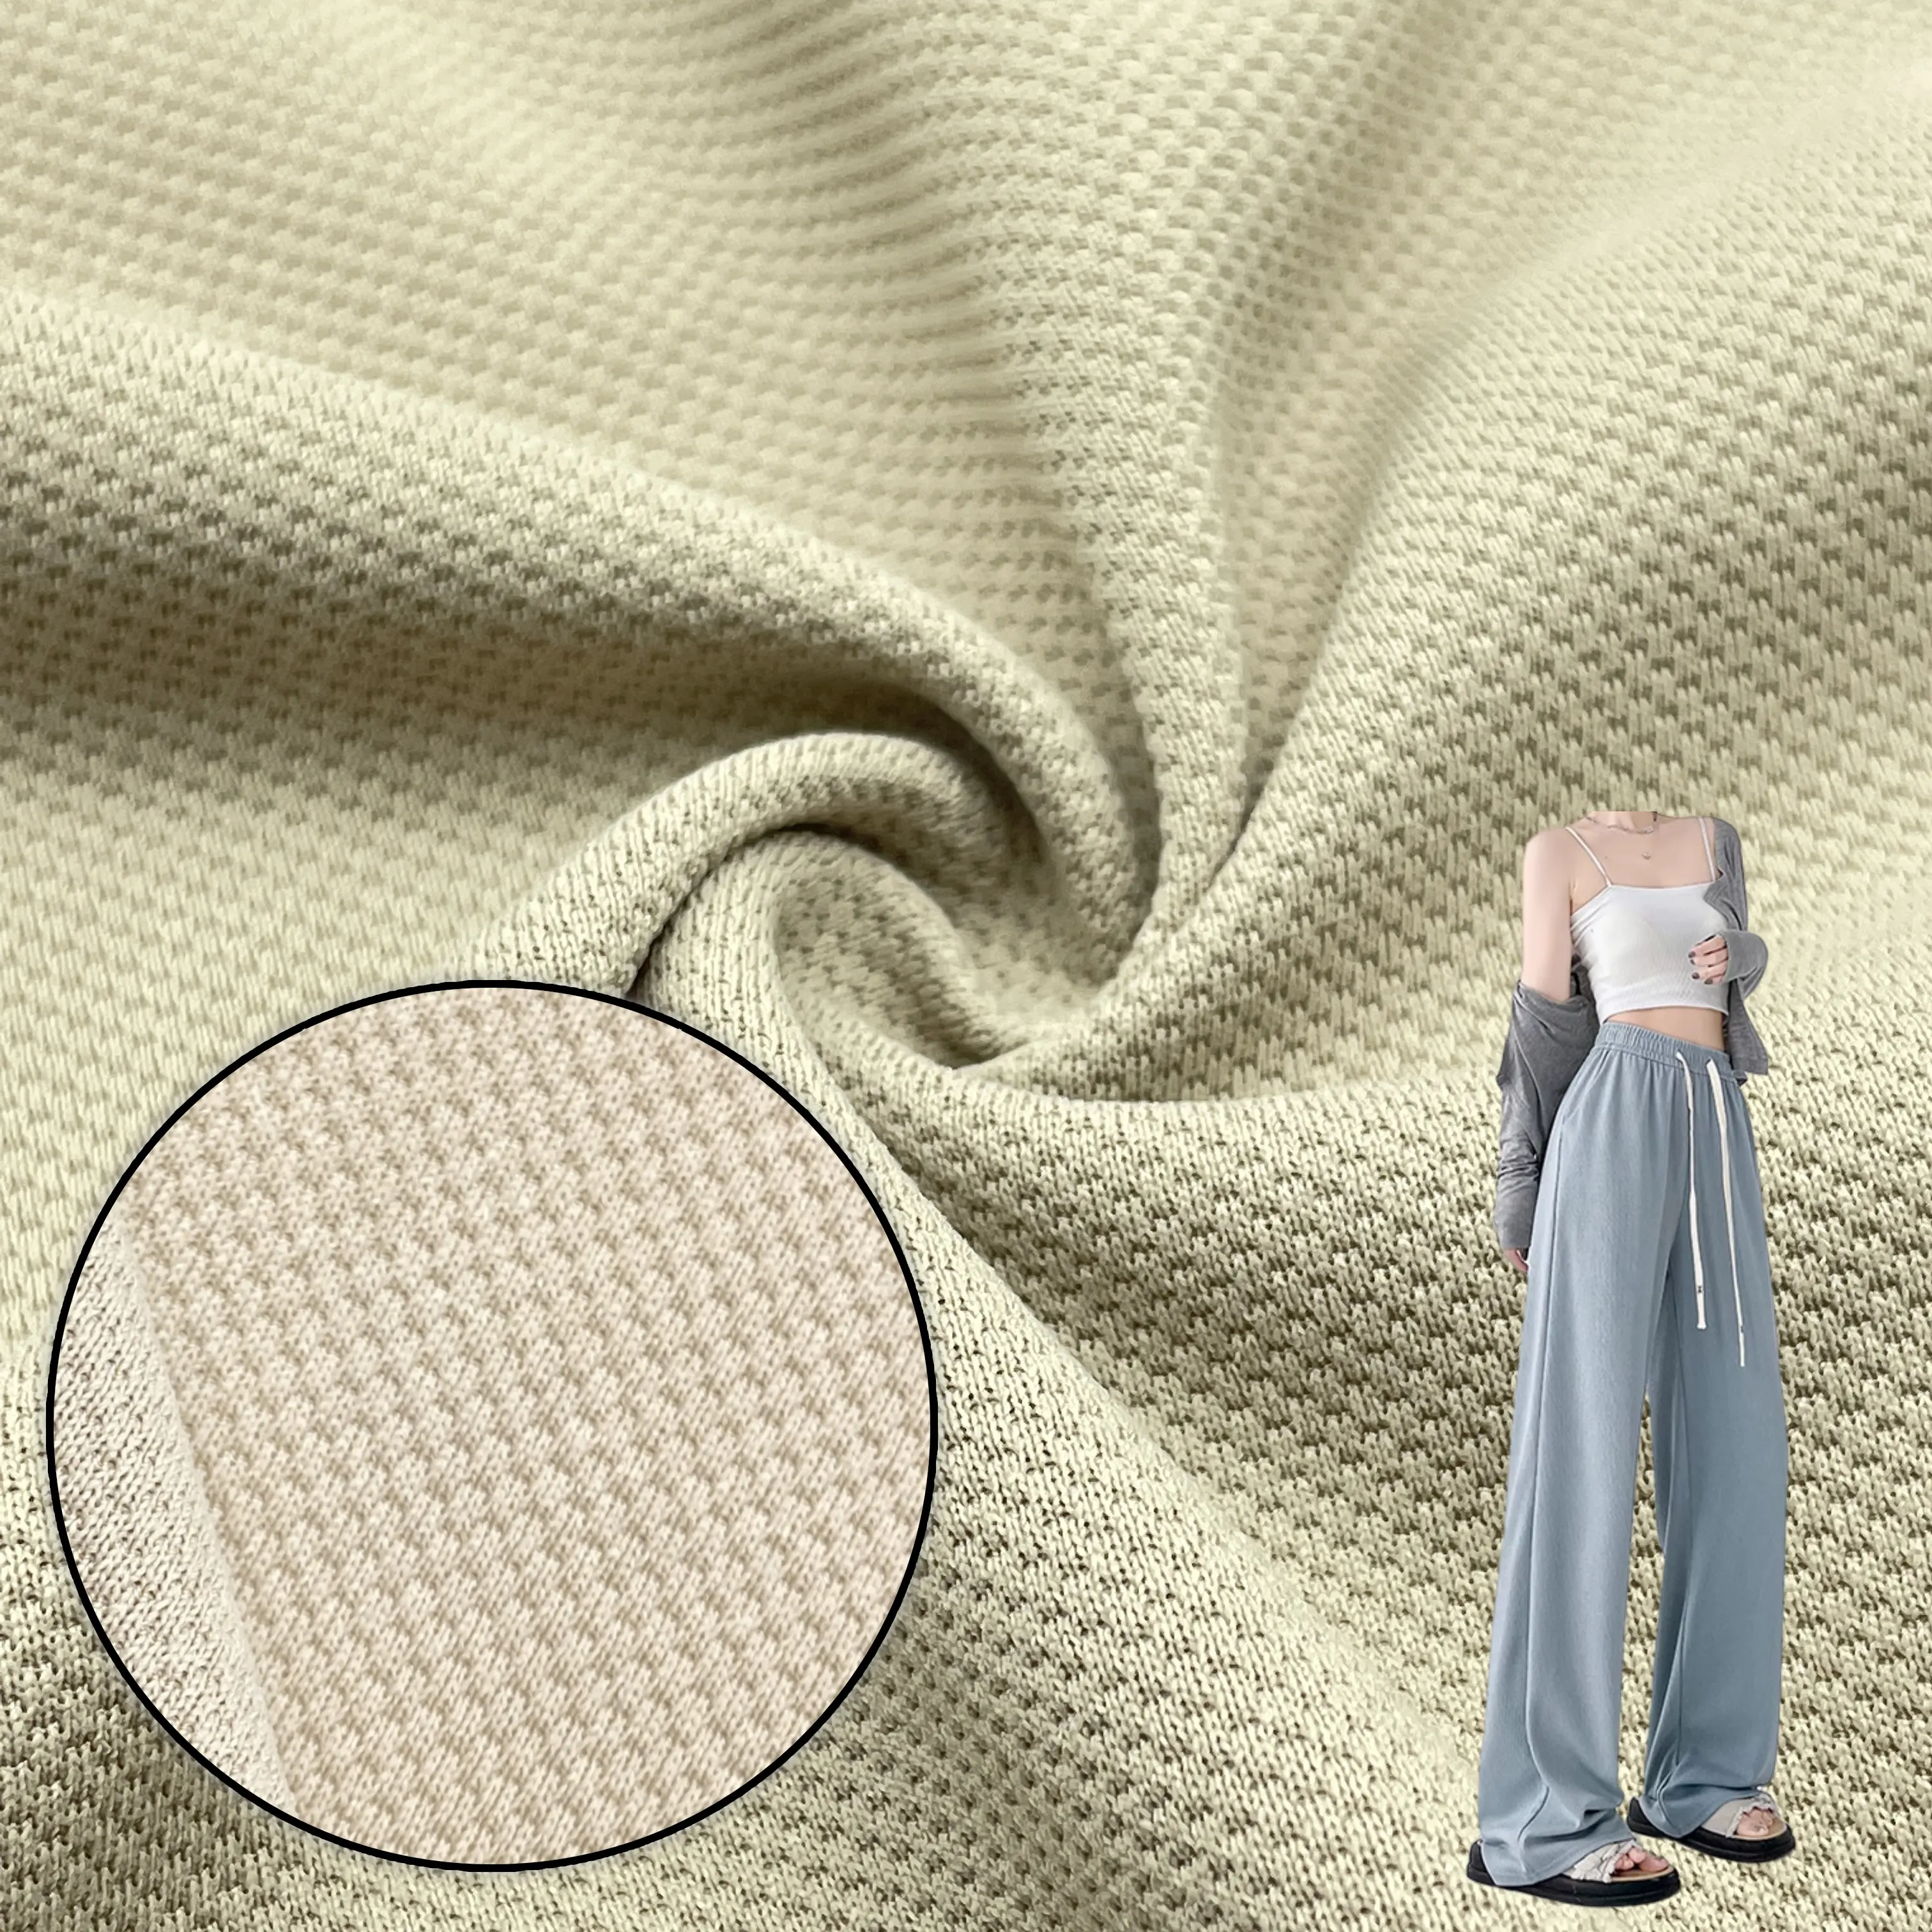 कपड़ा फैक्टरी रंगे बुनाई अनानास पैटर्न फैब्रिक कैजुअल पैंट फैशन पॉलिएस्टर स्पैन्डेक्स सामग्री फैब्रिक पैंट के लिए